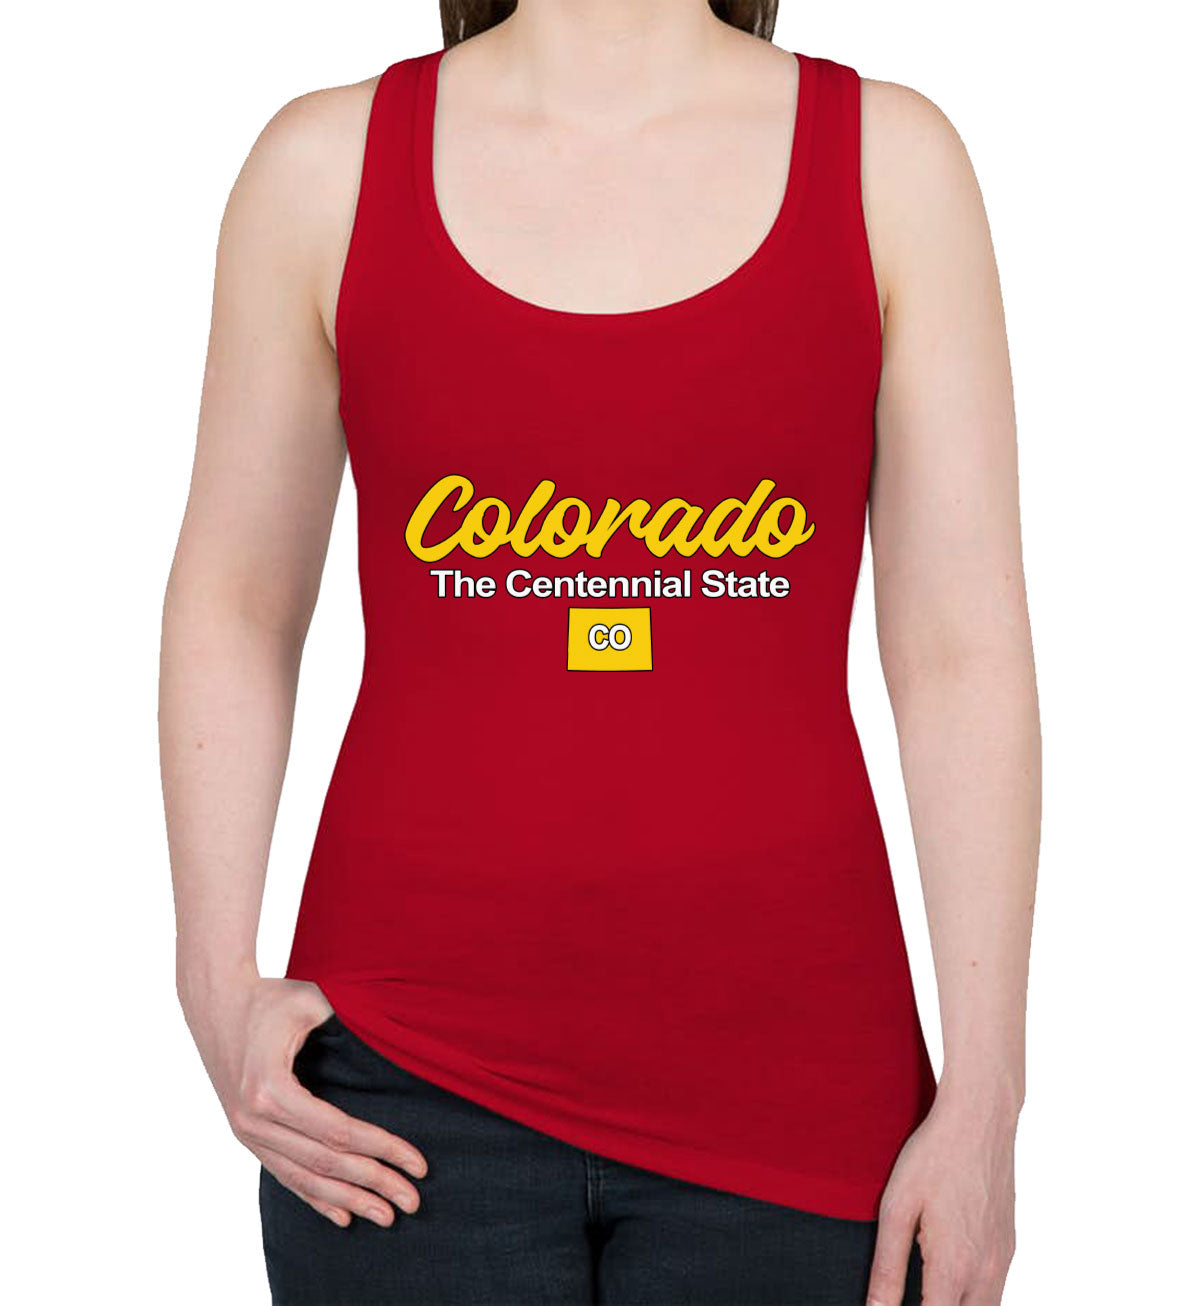 Colorado The Centennial State Women's Racerback Tank Top